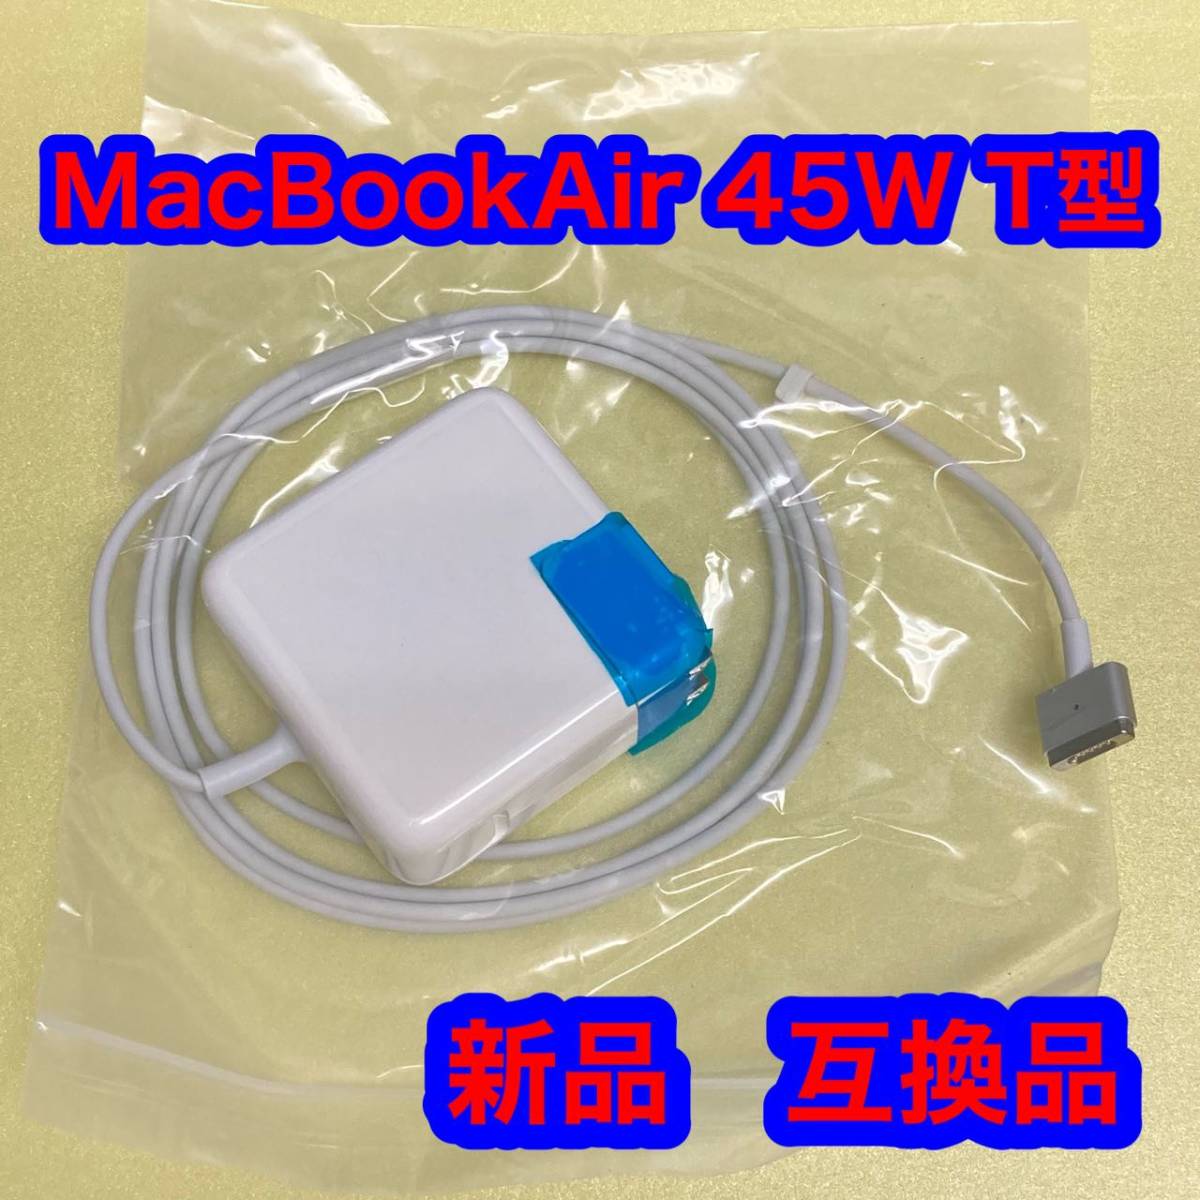 MacBook Air 充電器 互換 電源アダプタ 45W T 電源アダプタ コネクタ の画像1